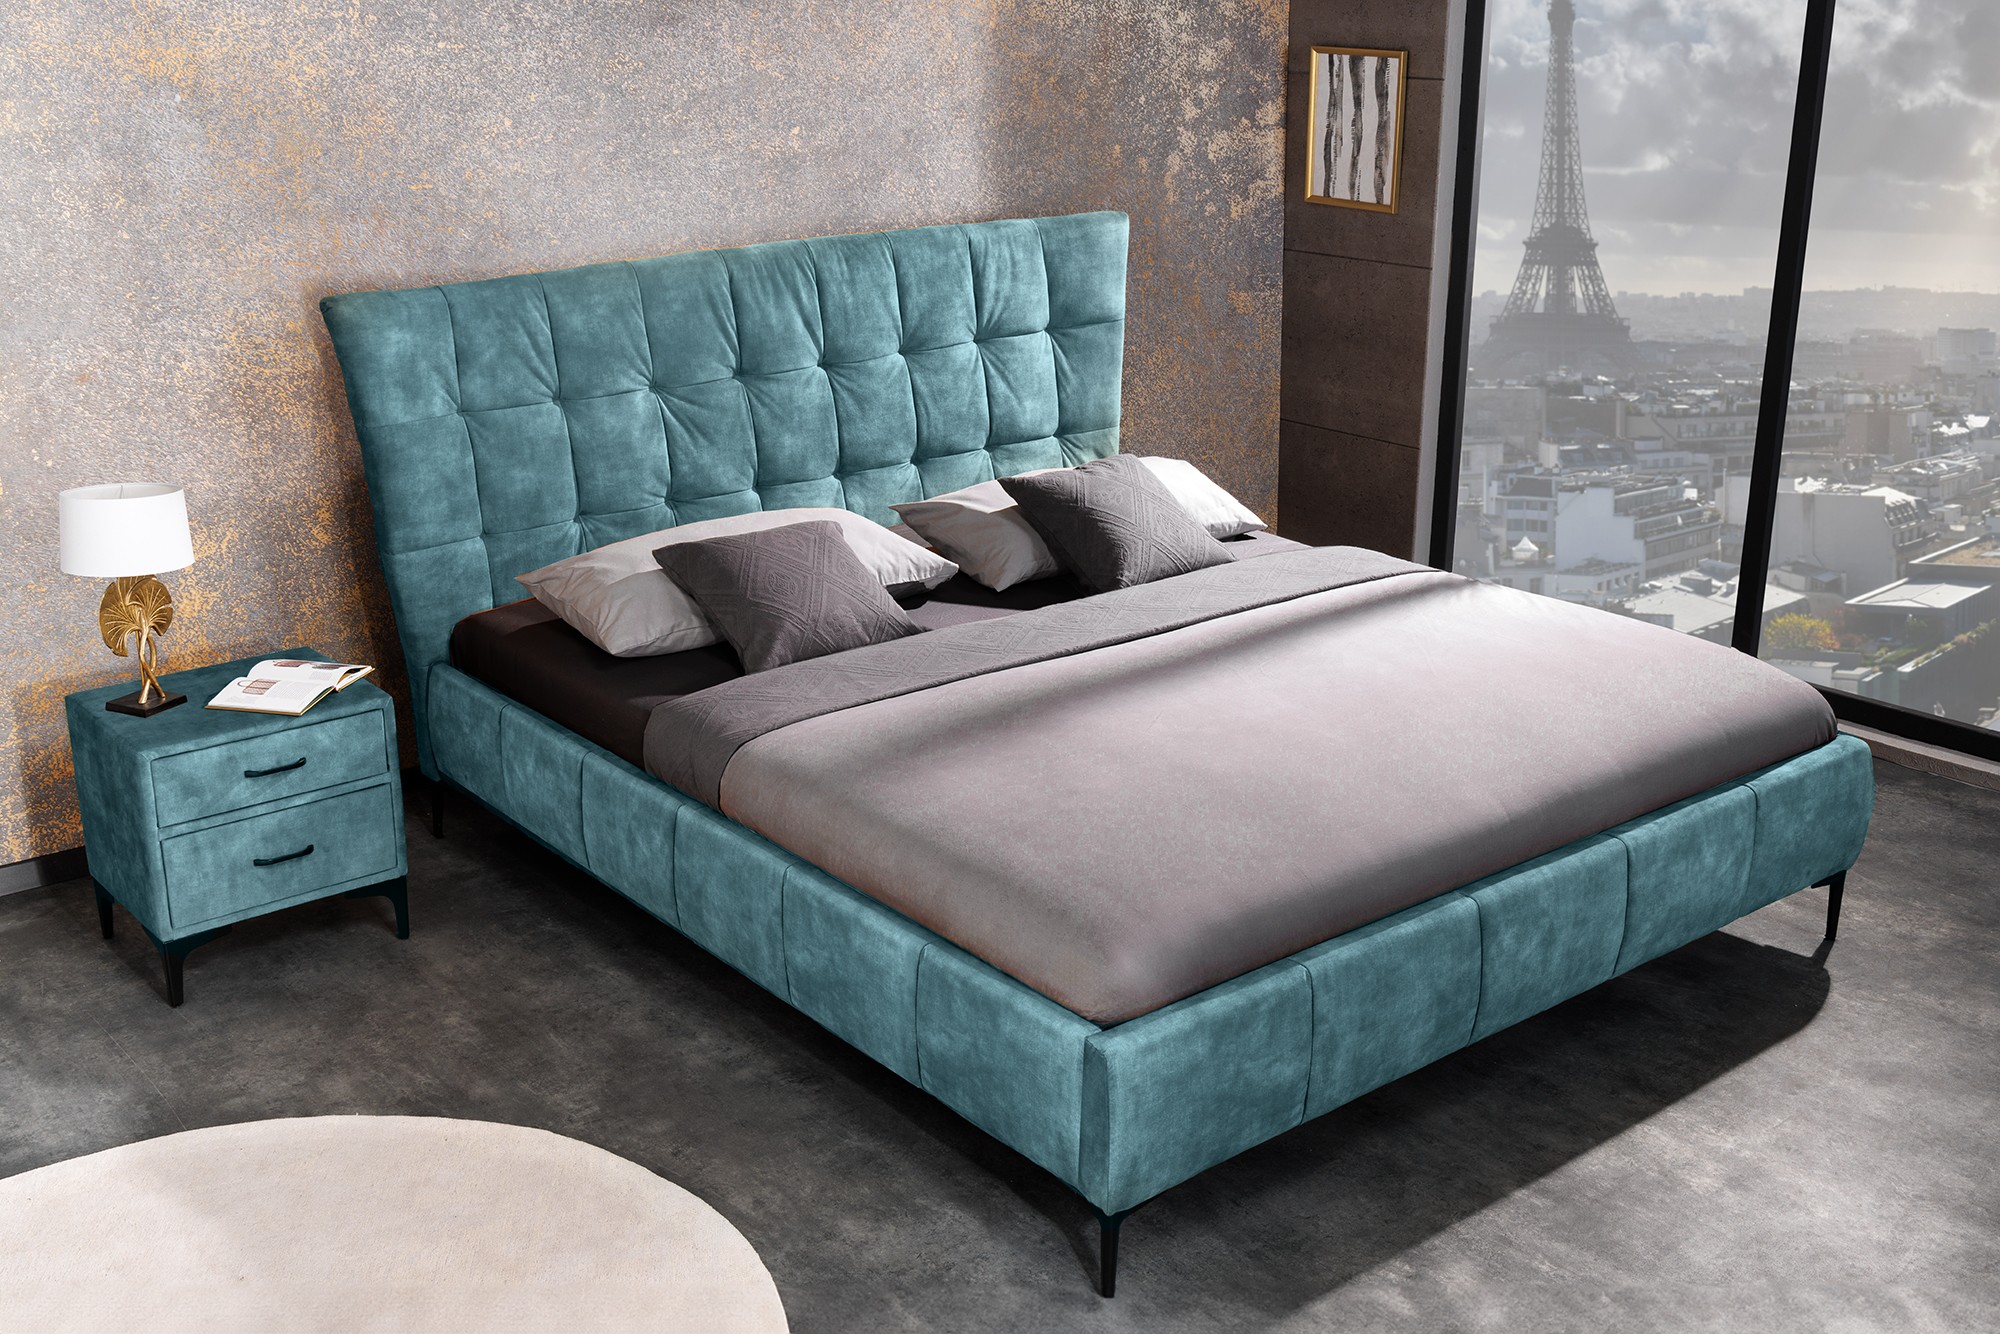 Estila Designová manželská postel Velouria petrolejové modré barvy se sametovým čalouněním 180x200